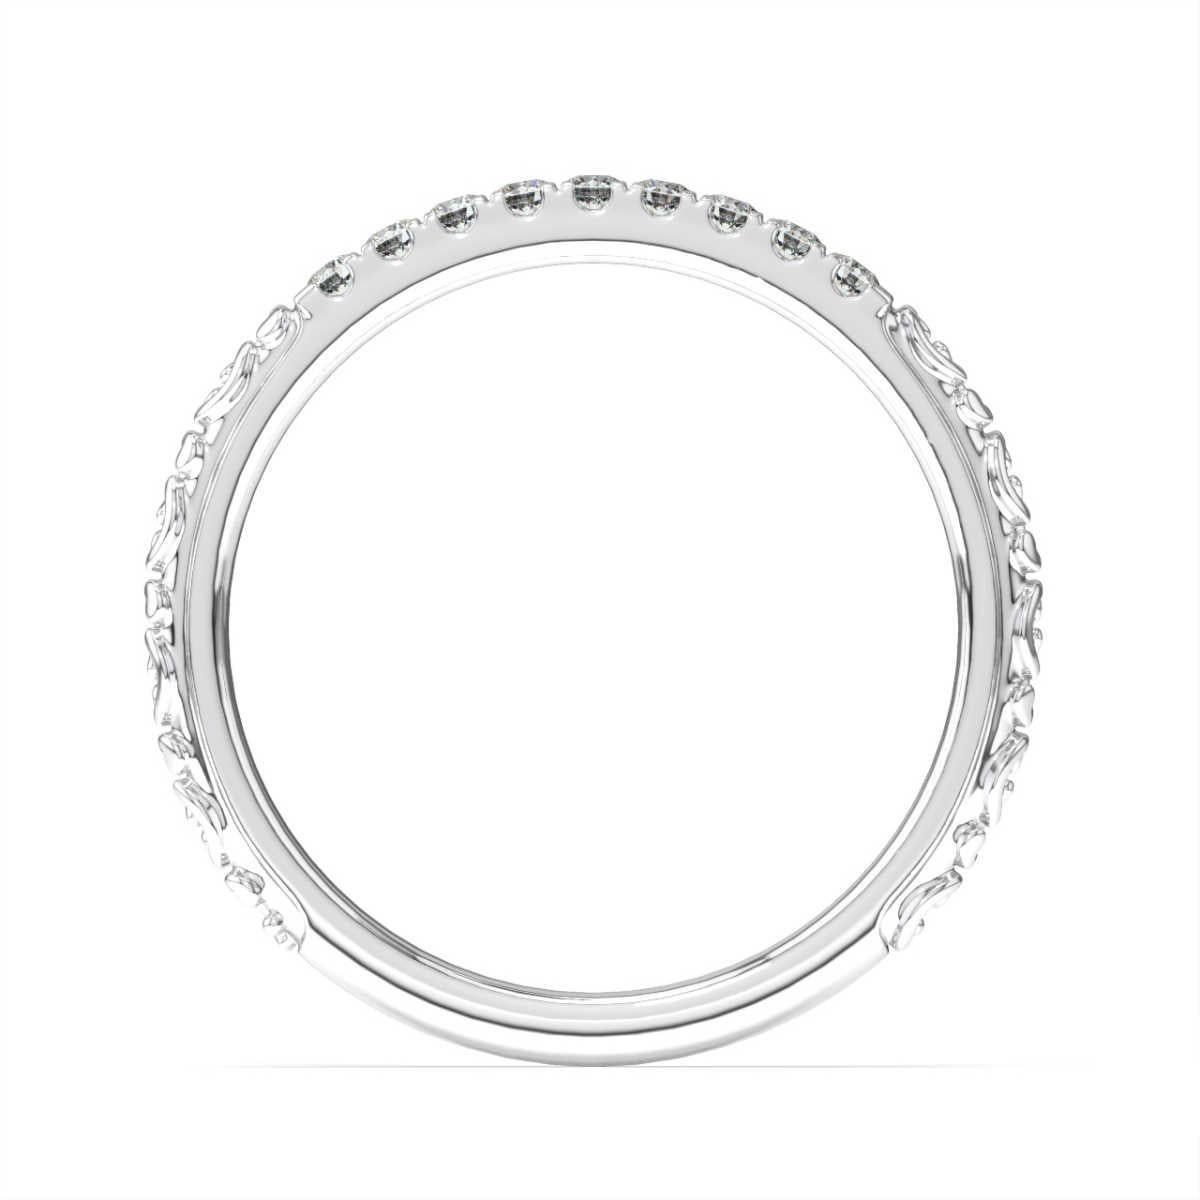 Dieser Ring im antiken Stil besteht aus 9 zierlichen runden Brillanten in Mikrozackenfassung, die auf beiden Seiten des Rings mit verschlungenen Schnecken verziert sind. Erleben Sie den Unterschied!

Einzelheiten zum Produkt: 

Farbe des zentralen